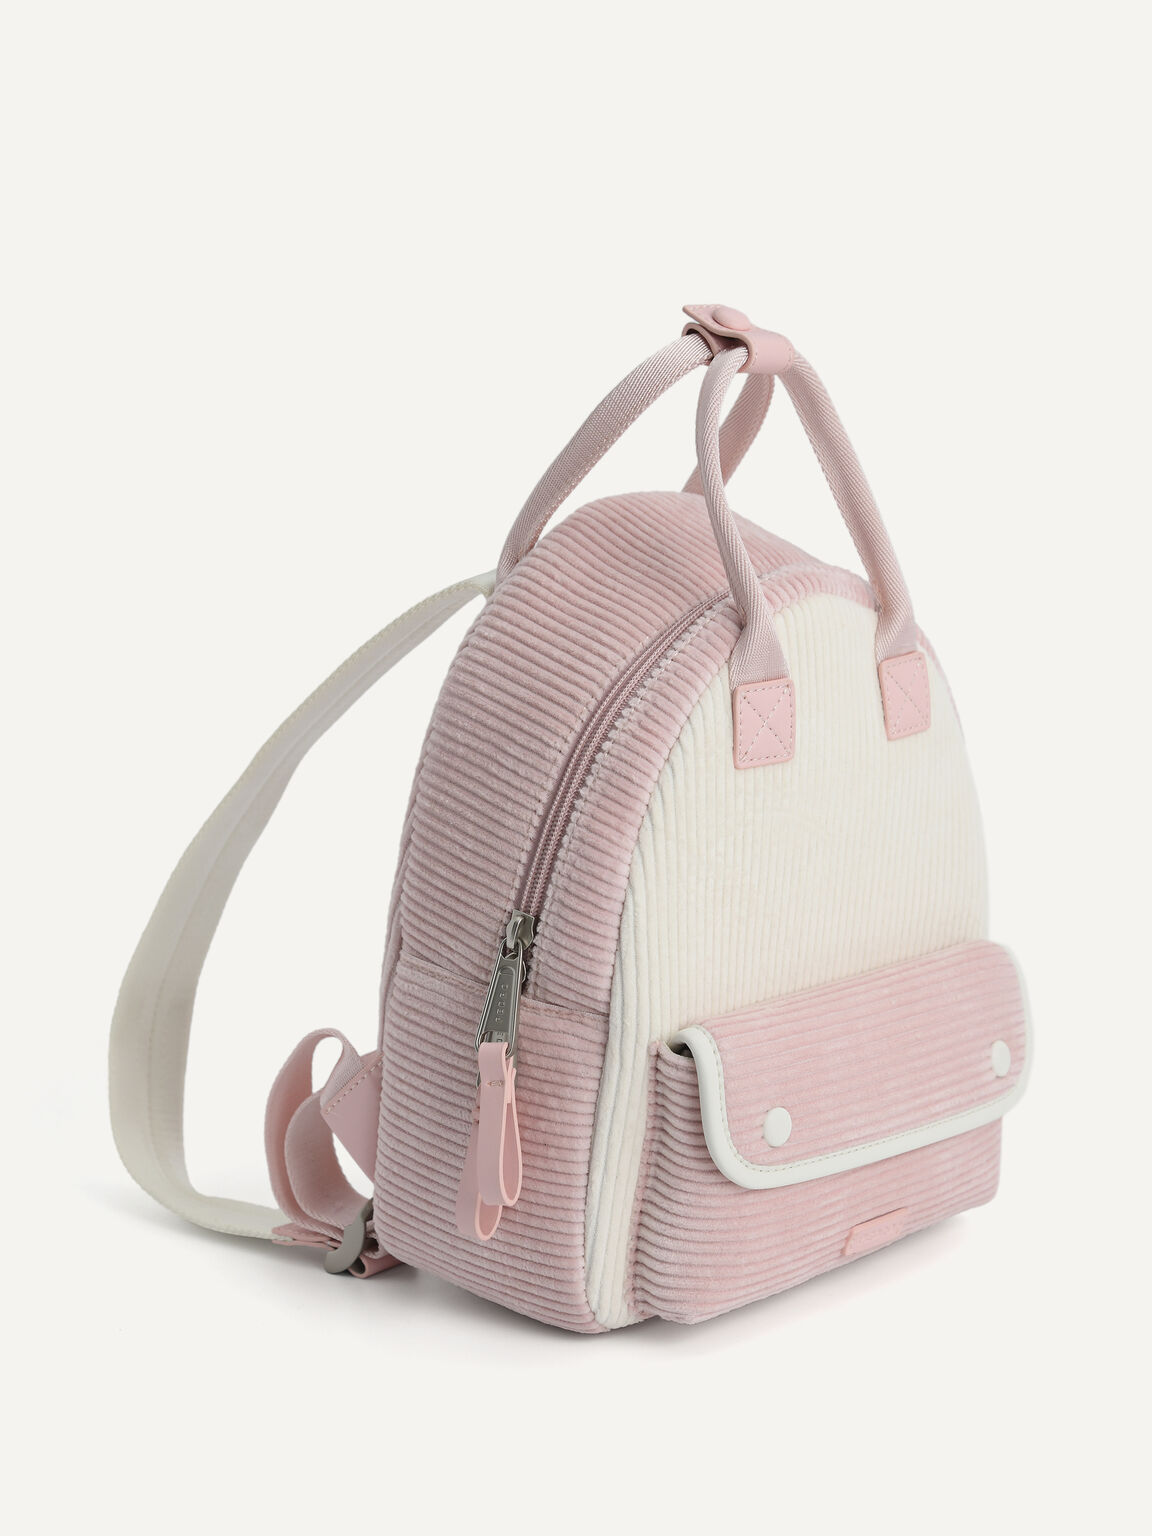 Corduroy Backpack, Light Pink, hi-res